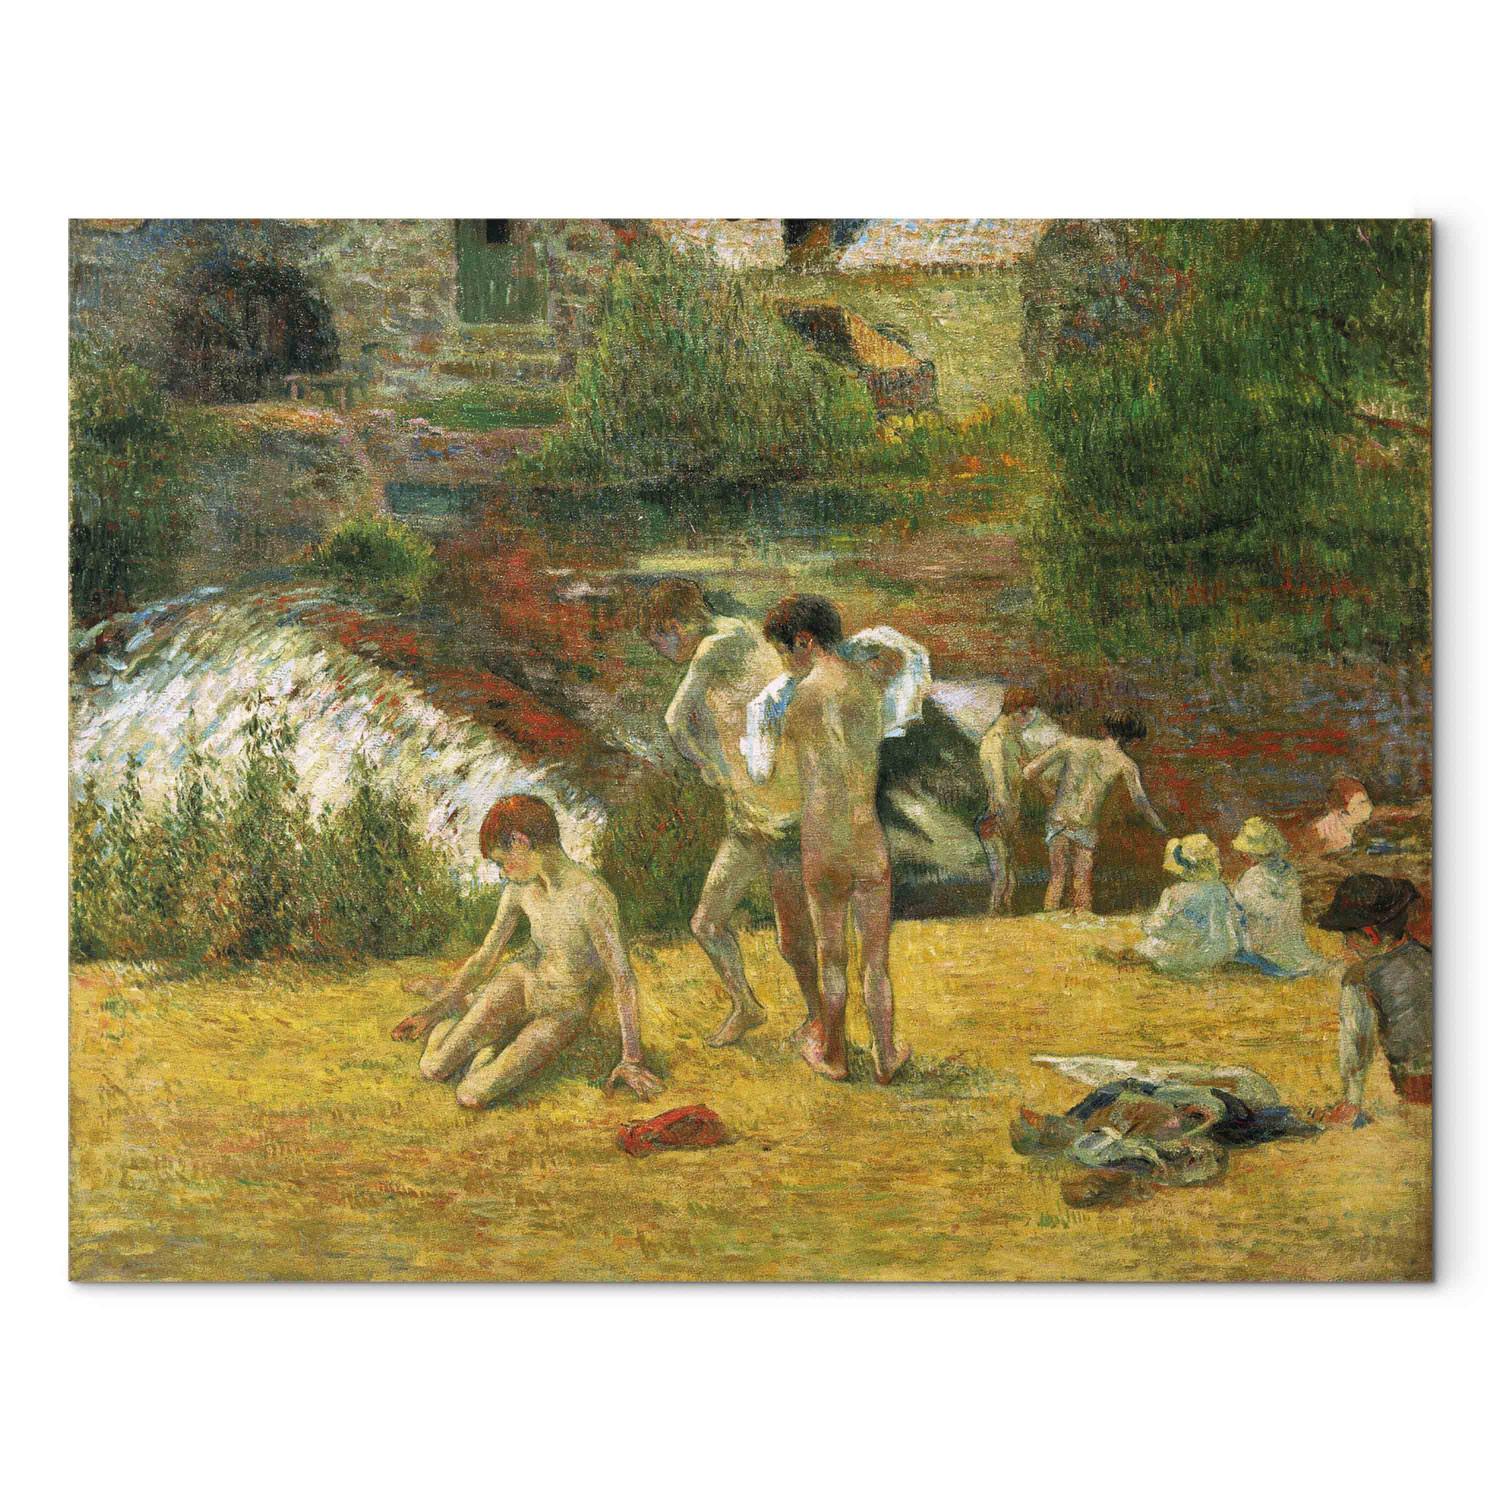 Cuadro famoso Jeunes Bretons au bain, ou La baignade au moulin du Bois d'Amour